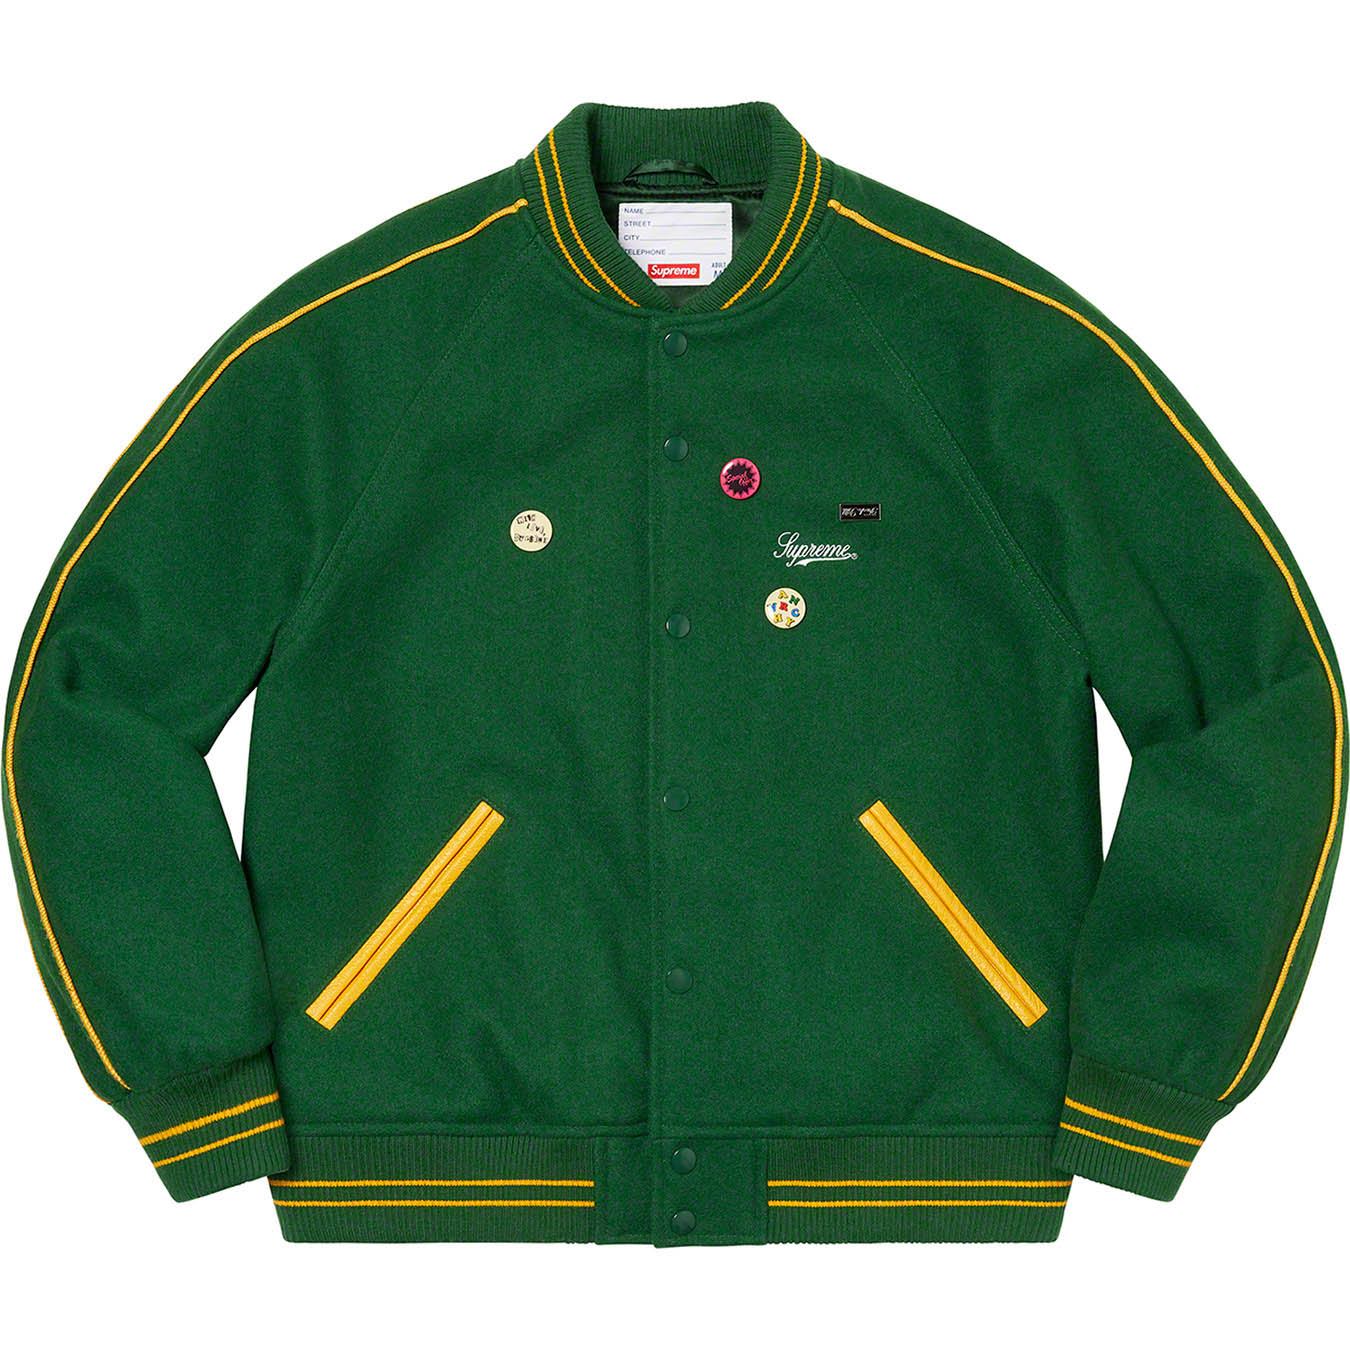 Supreme Jamie Reid/Supreme It's All Bollocks Varsity Jacket